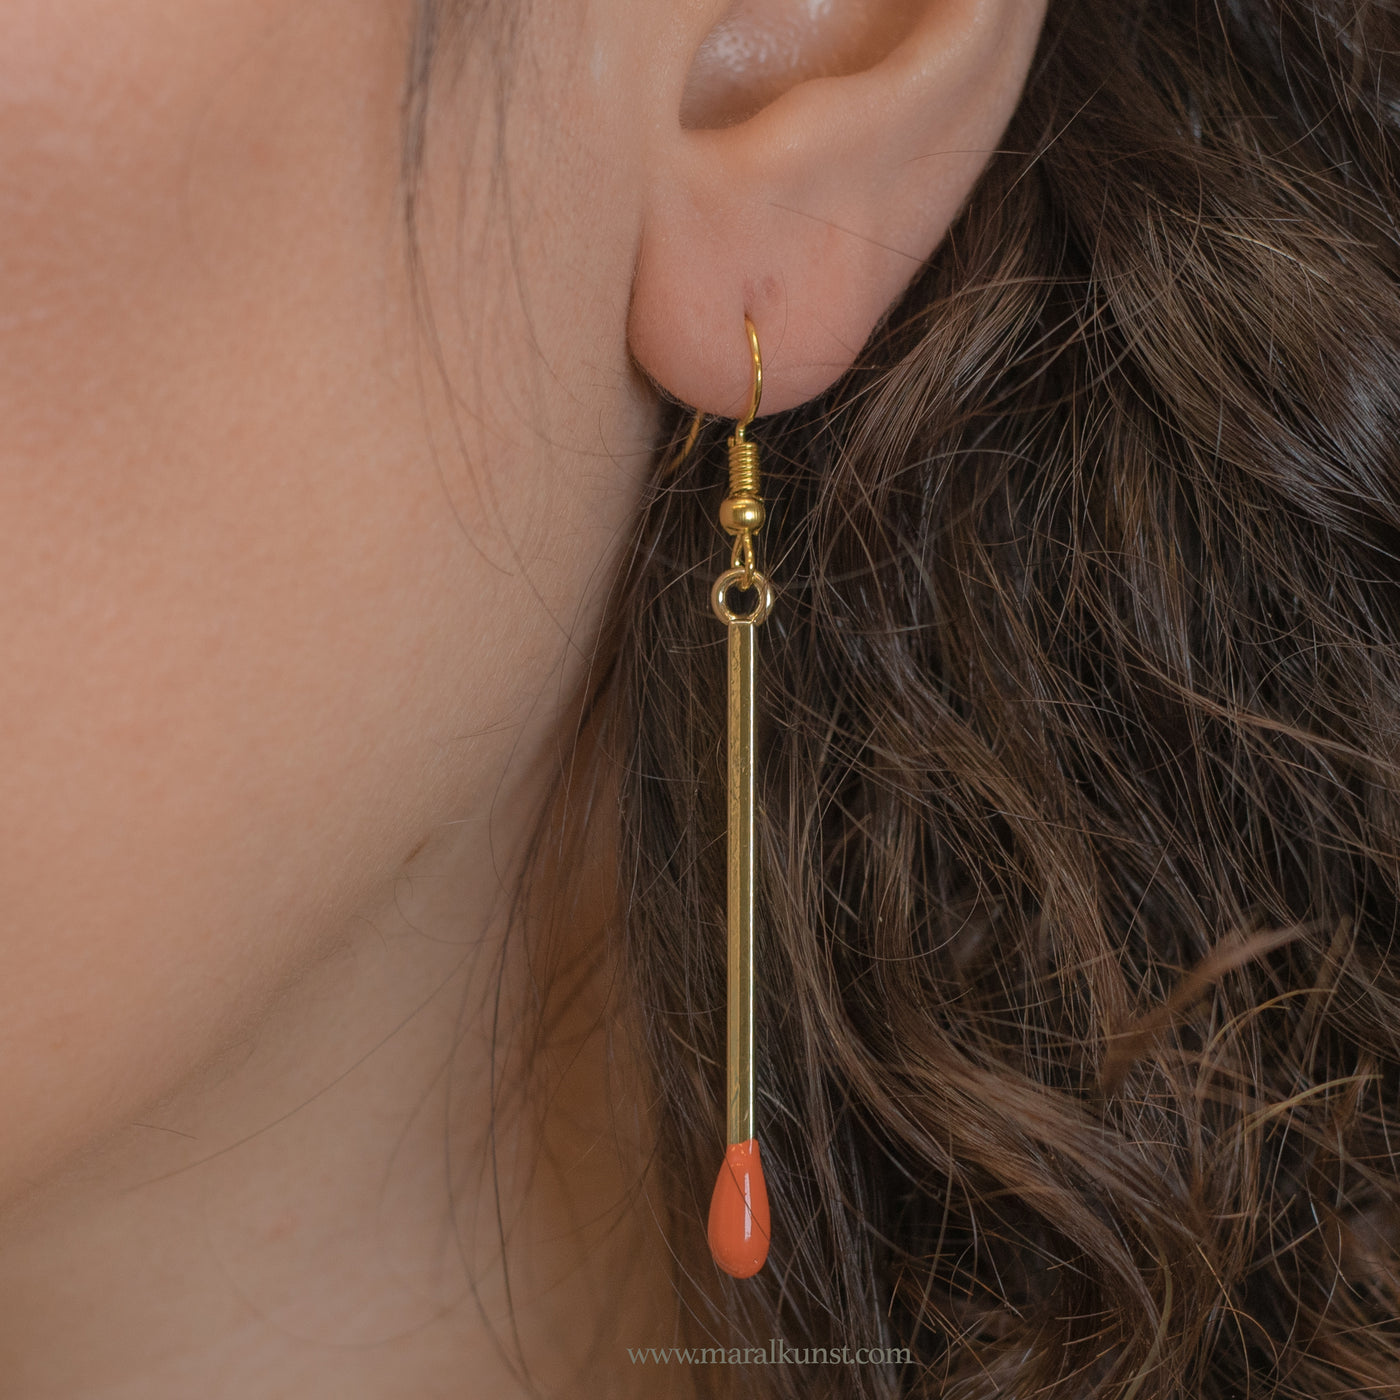 matchstick earrings